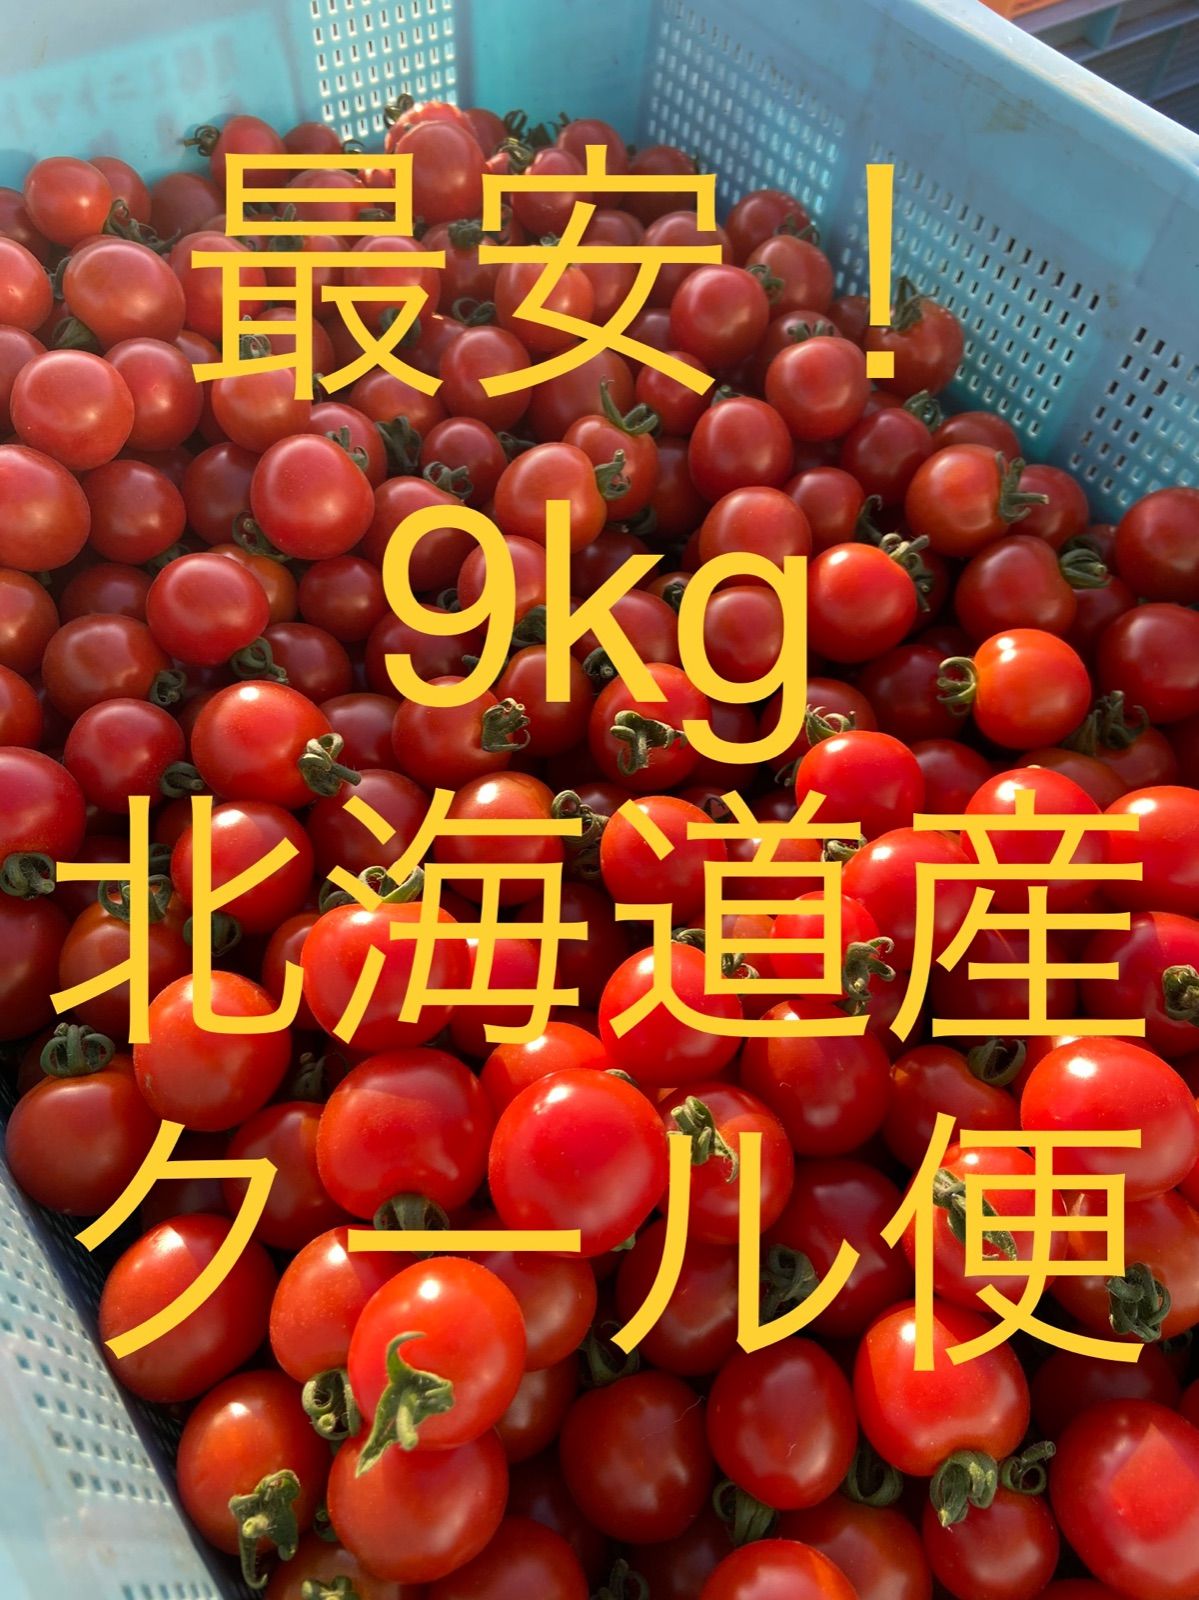 ミニトマト 9kg 北海道産 キャロル10 - メルカリ